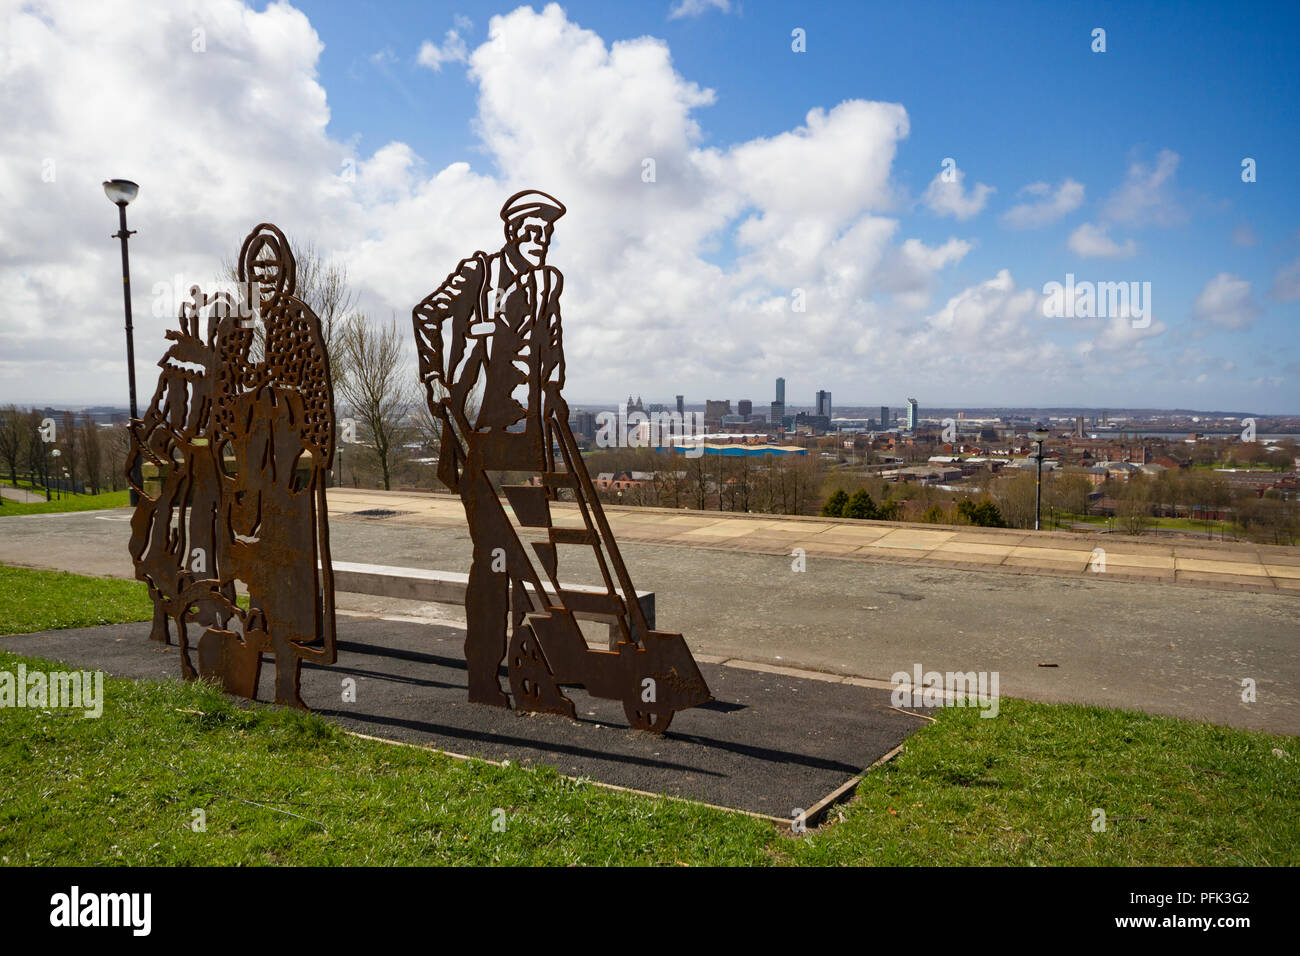 Ritratto in panchina Everton Parco celebrando tre icone locali, Kitty Wilkinson, Molly Bushell e un lavoratore dock. Liverpool, in Inghilterra. Foto Stock